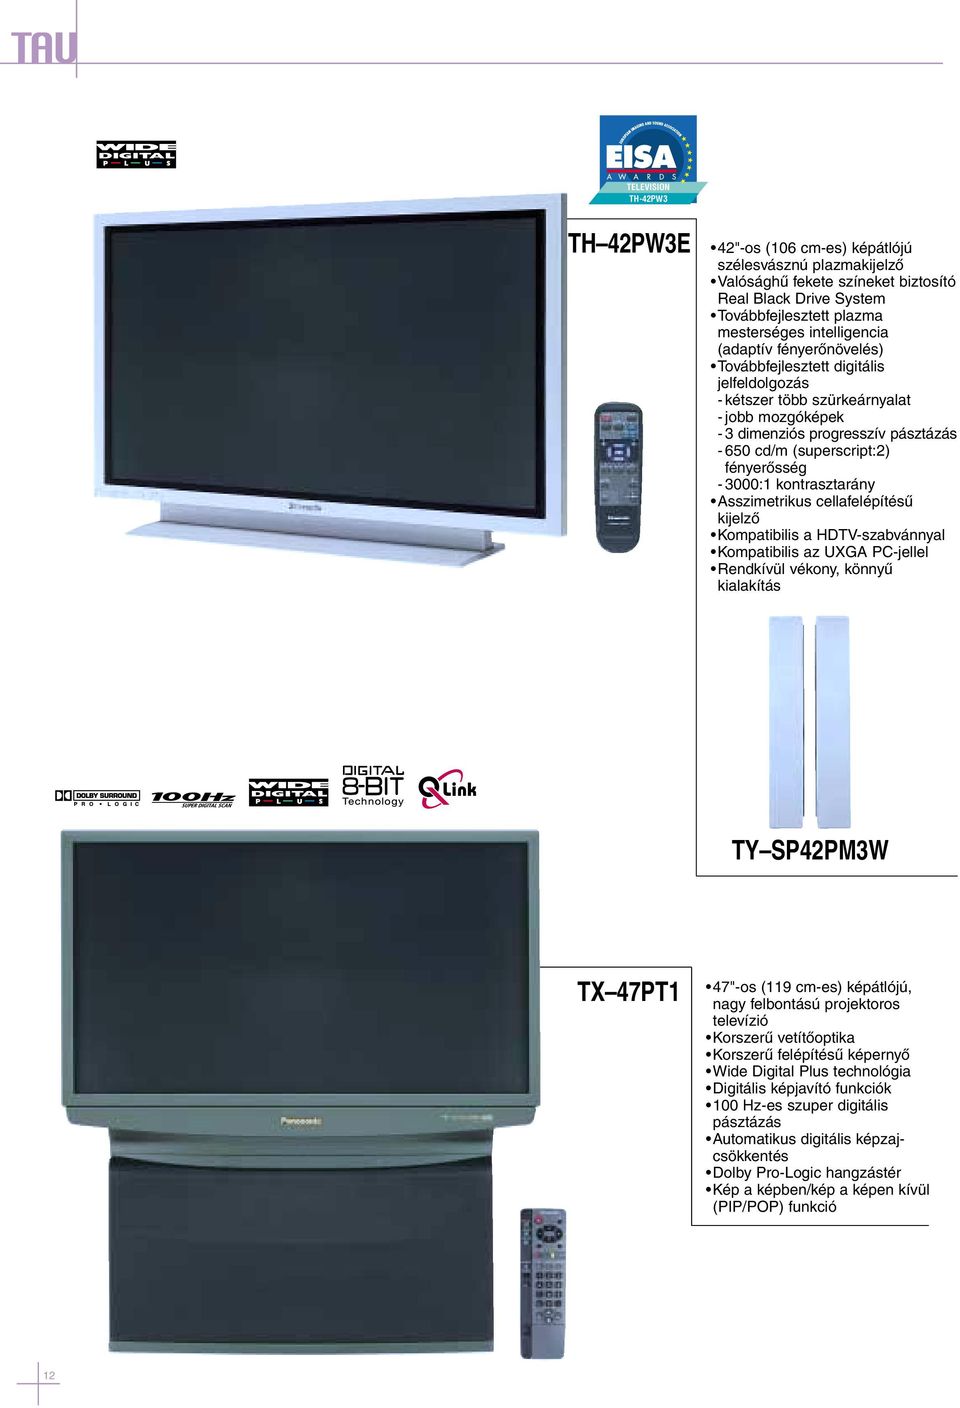 fényerõsség - 3000:1 kontrasztarány Asszimetrikus cellafelépítésû kijelzõ Kompatibilis a HDTV-szabvánnyal Kompatibilis az UXGA PC-jellel Rendkívül vékony, könnyû kialakítás TY SP42PM3W TX 47PT1